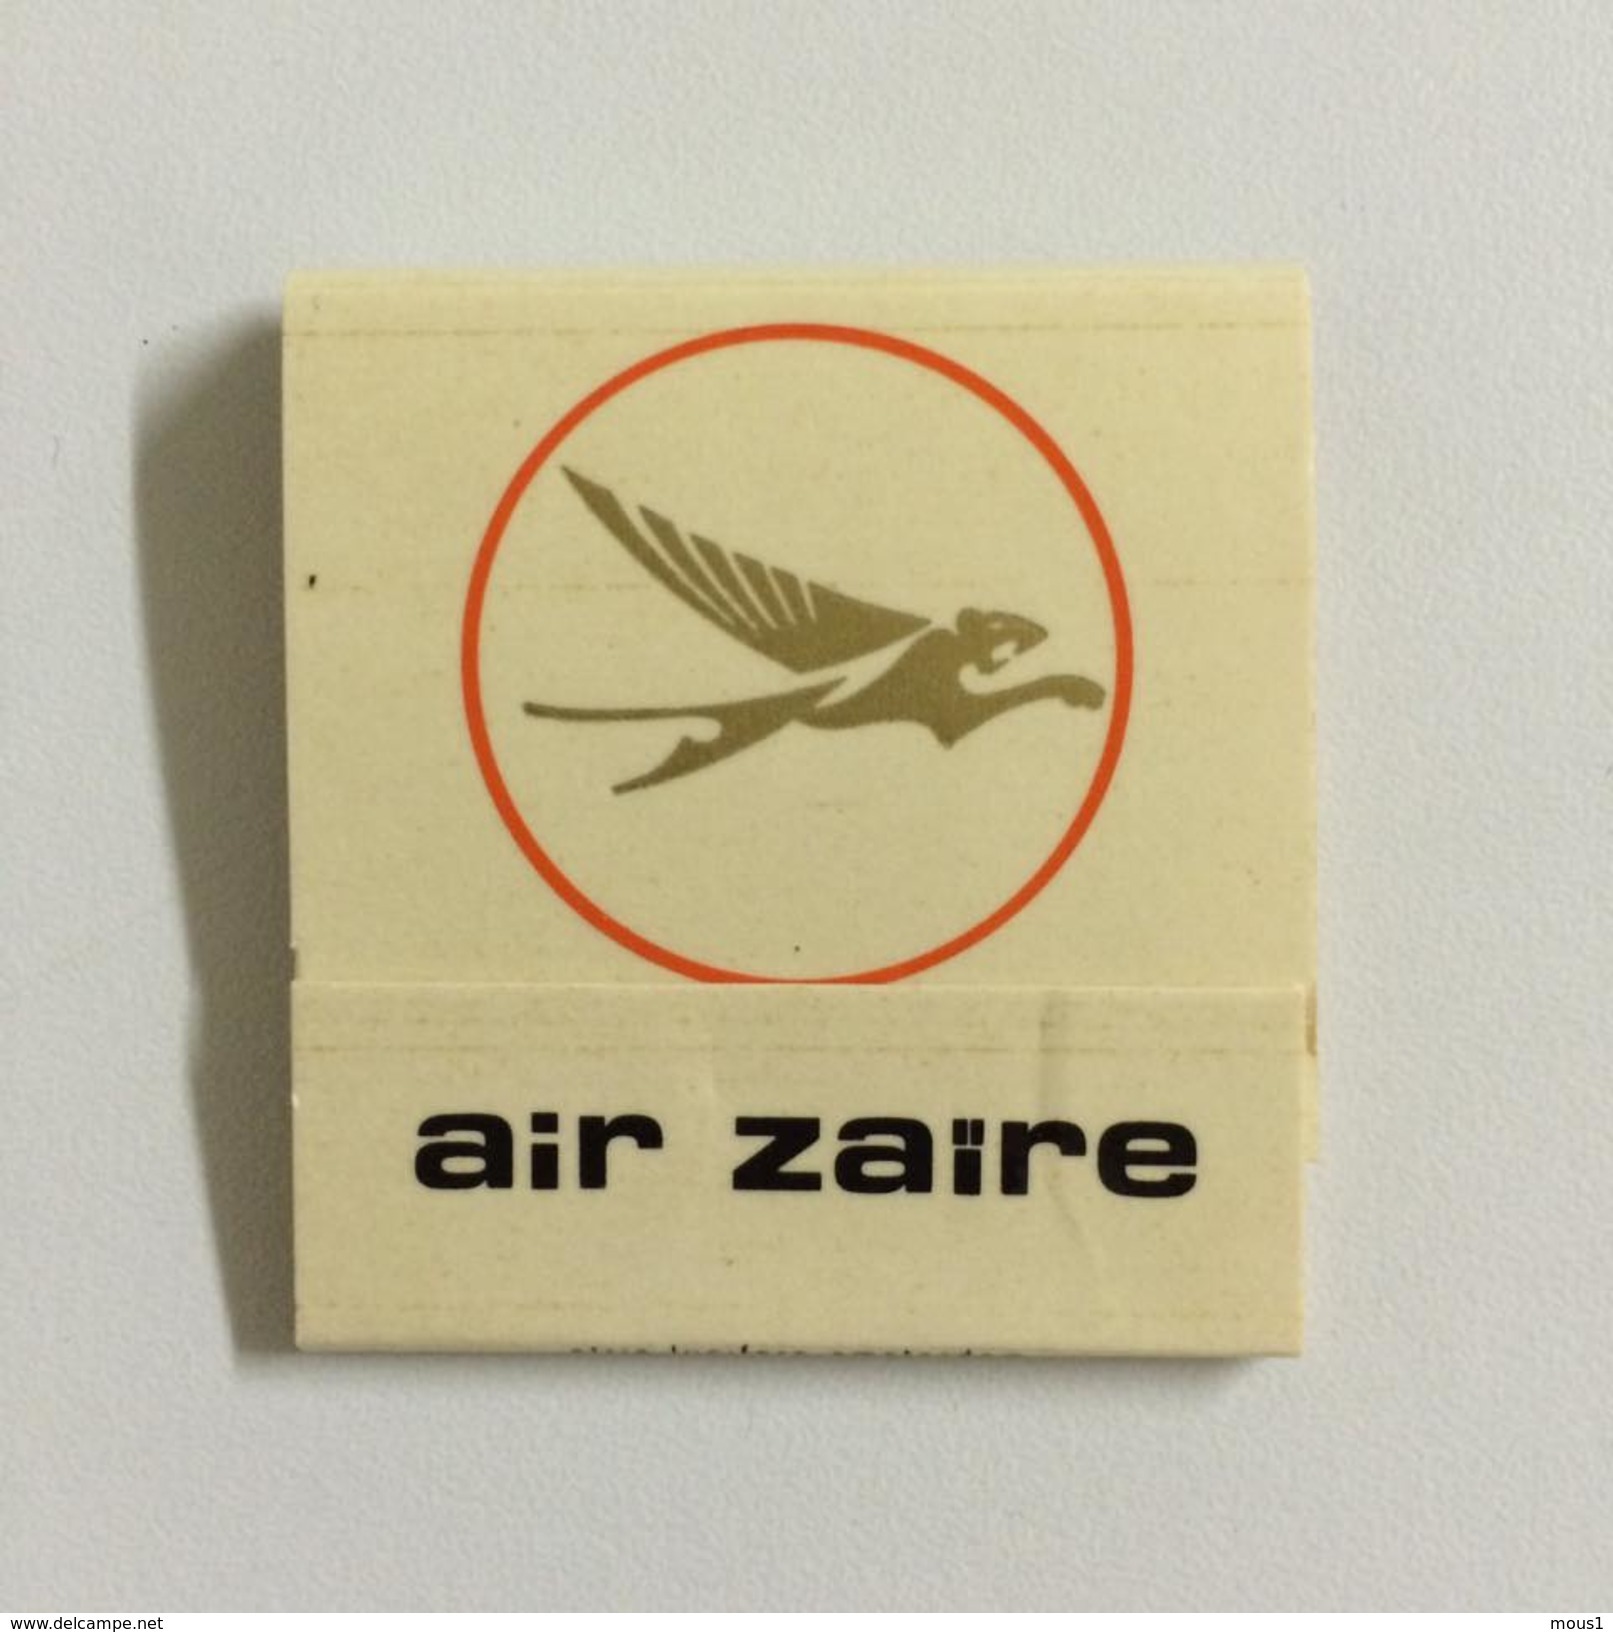 AIR ZAIRE: Une Pochette D'allumettes Neuve.  Matches Airline Company. - Boîtes D’allumettes